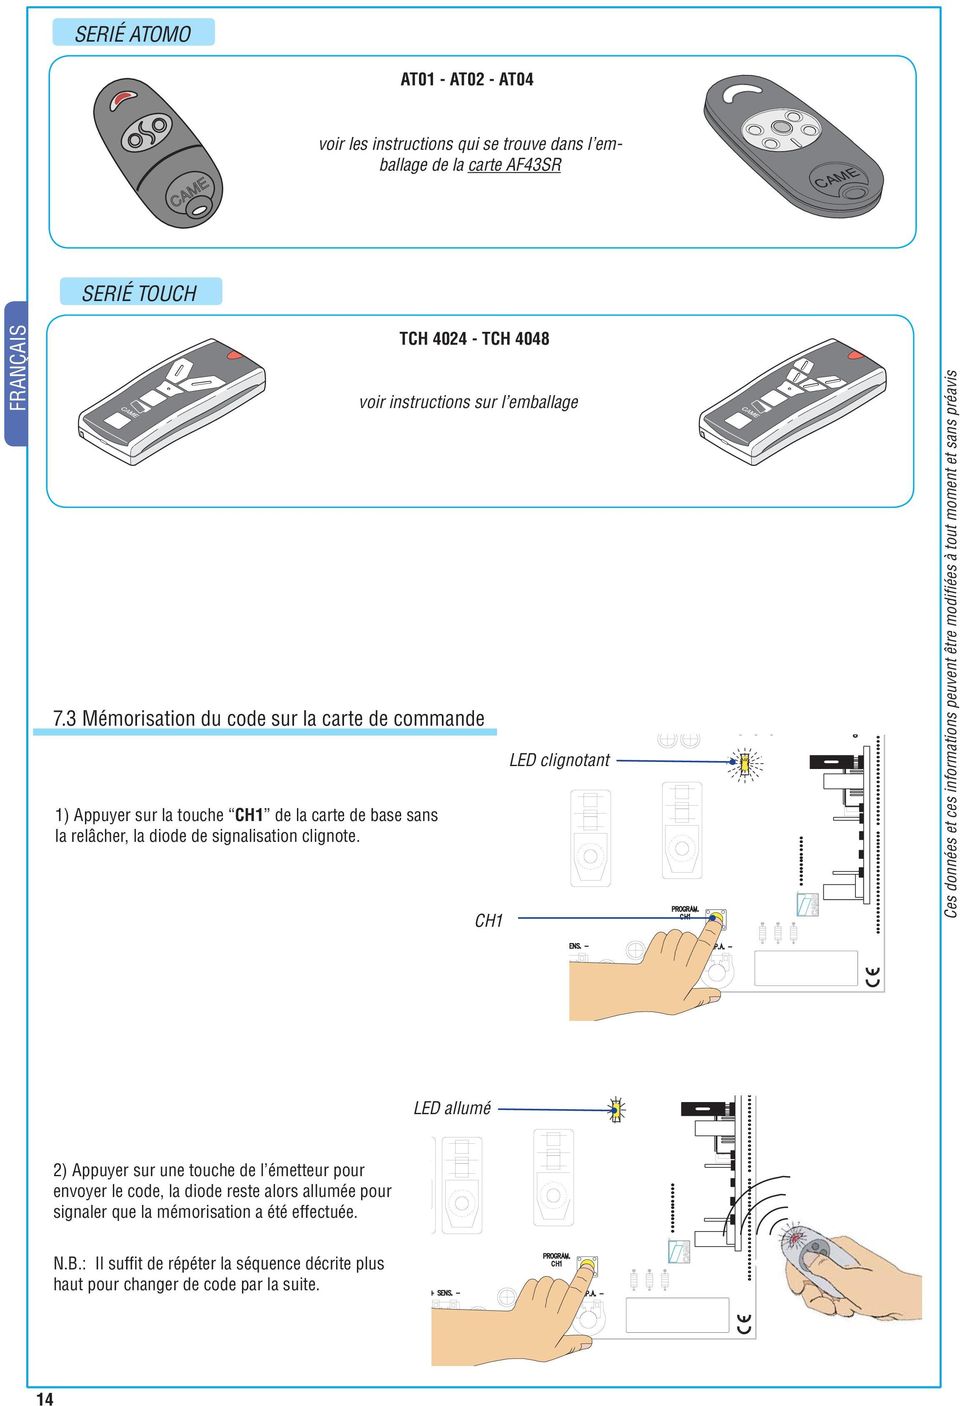 TCH 404 - TCH 4048 voir instructions sur l emballage 4V AC